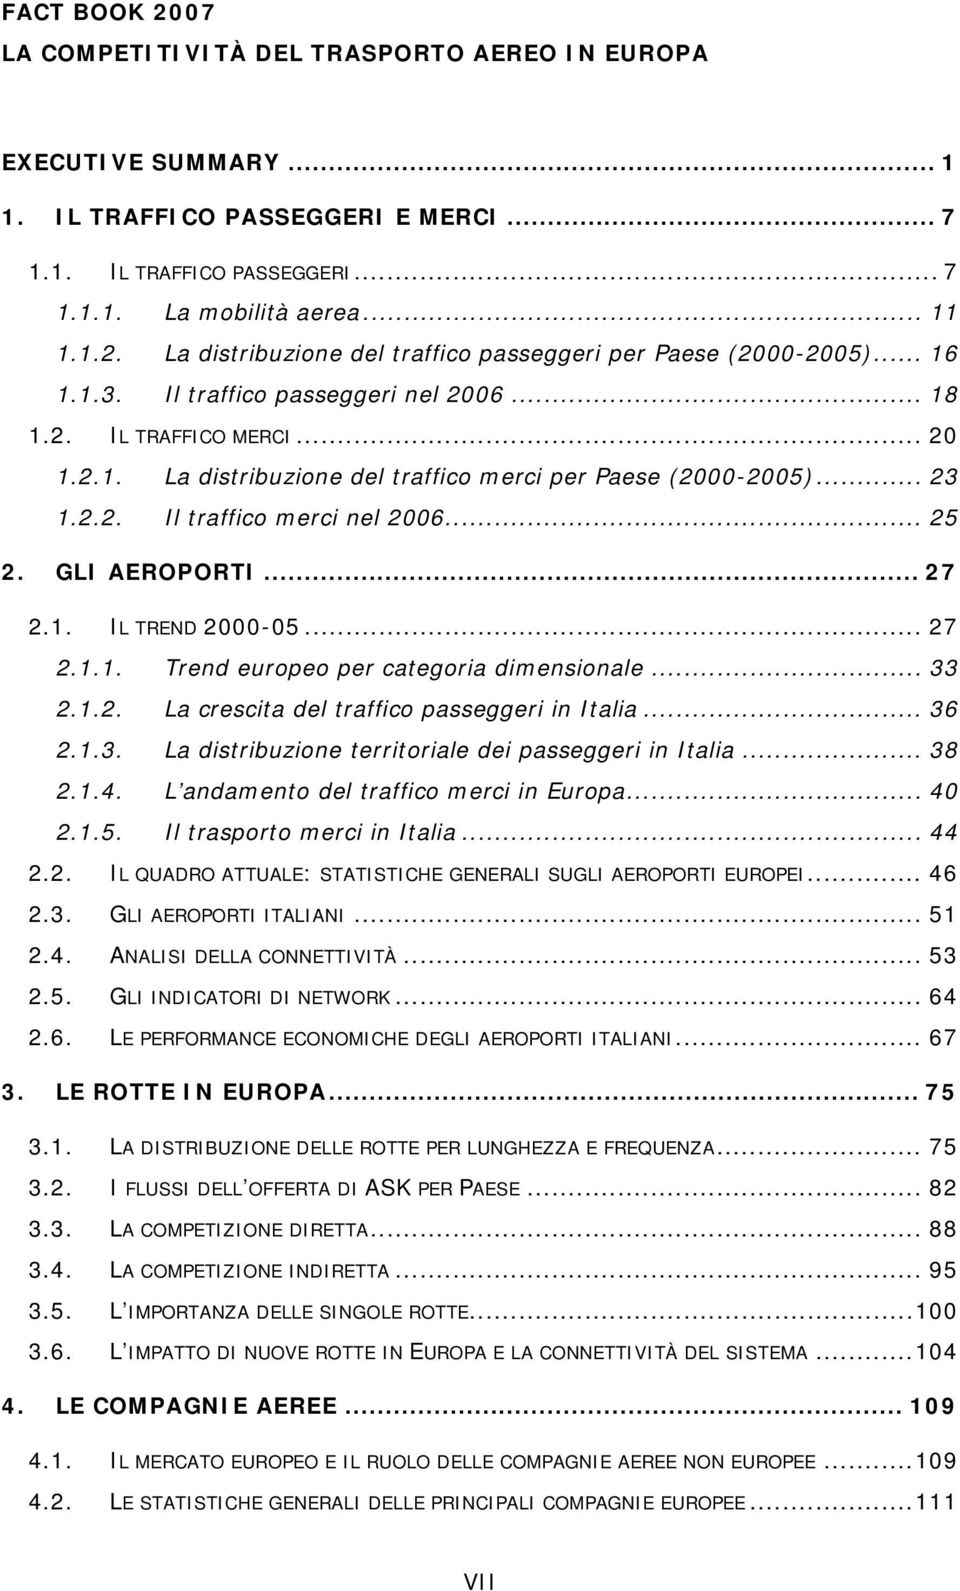 GLI AEROPORTI... 27 2.1. IL TREND 2000-05... 27 2.1.1. Trend europeo per categoria dimensionale... 33 2.1.2. La crescita del traffico passeggeri in Italia... 36 2.1.3. La distribuzione territoriale dei passeggeri in Italia.